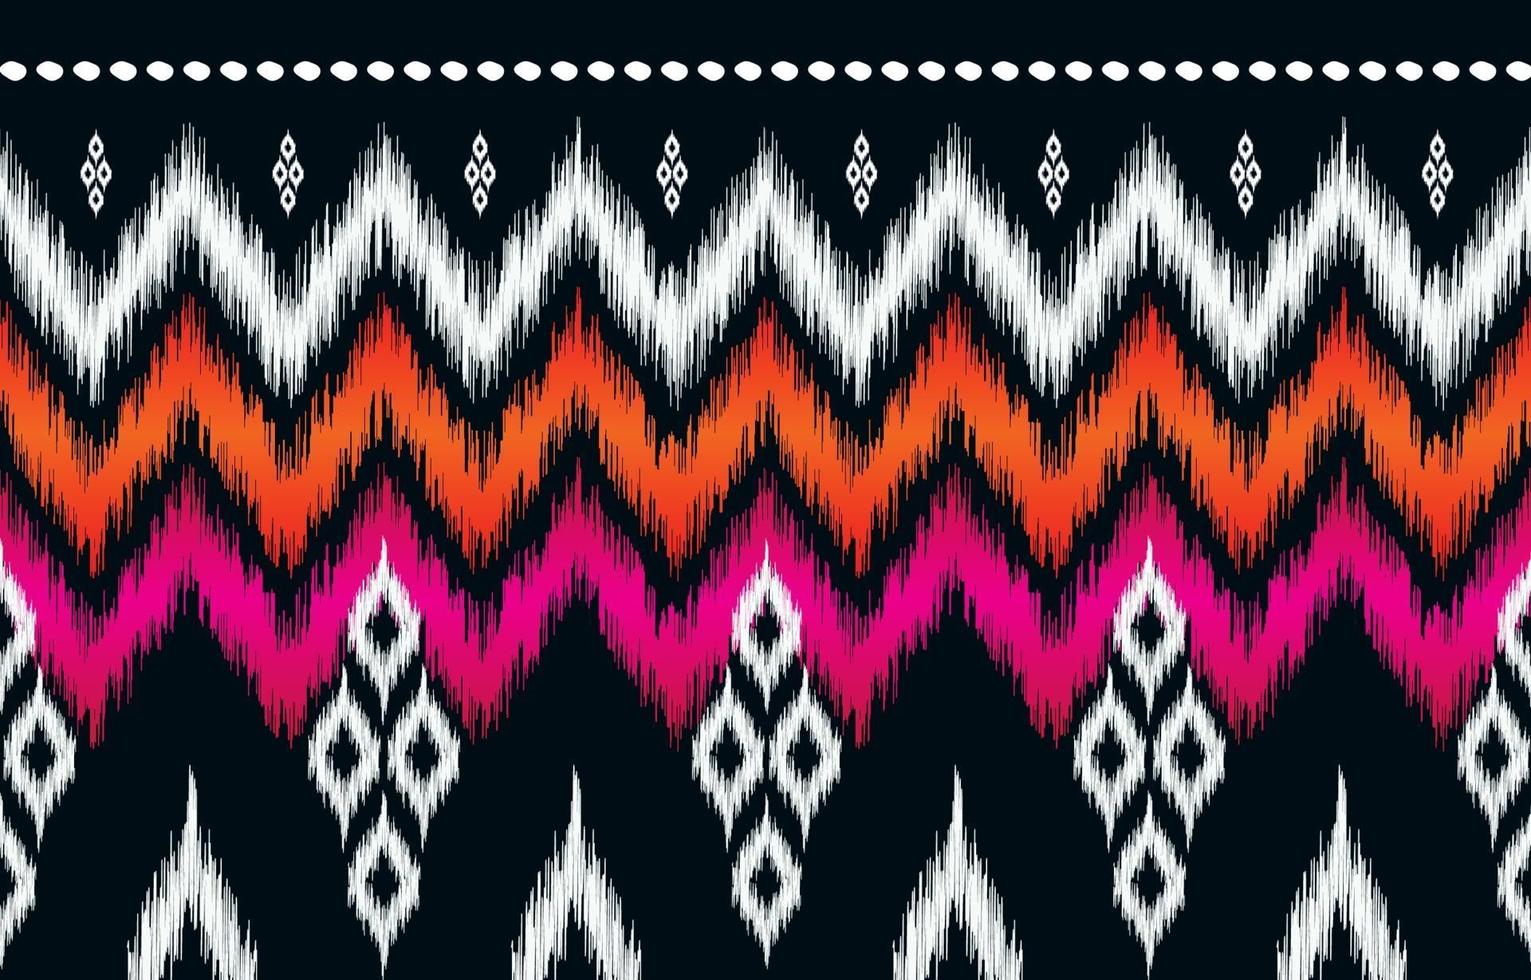 conception de fond traditionnel abstrait motif ethnique oriental pour papier peint, tissu, textile, tapis, batik. vecteur